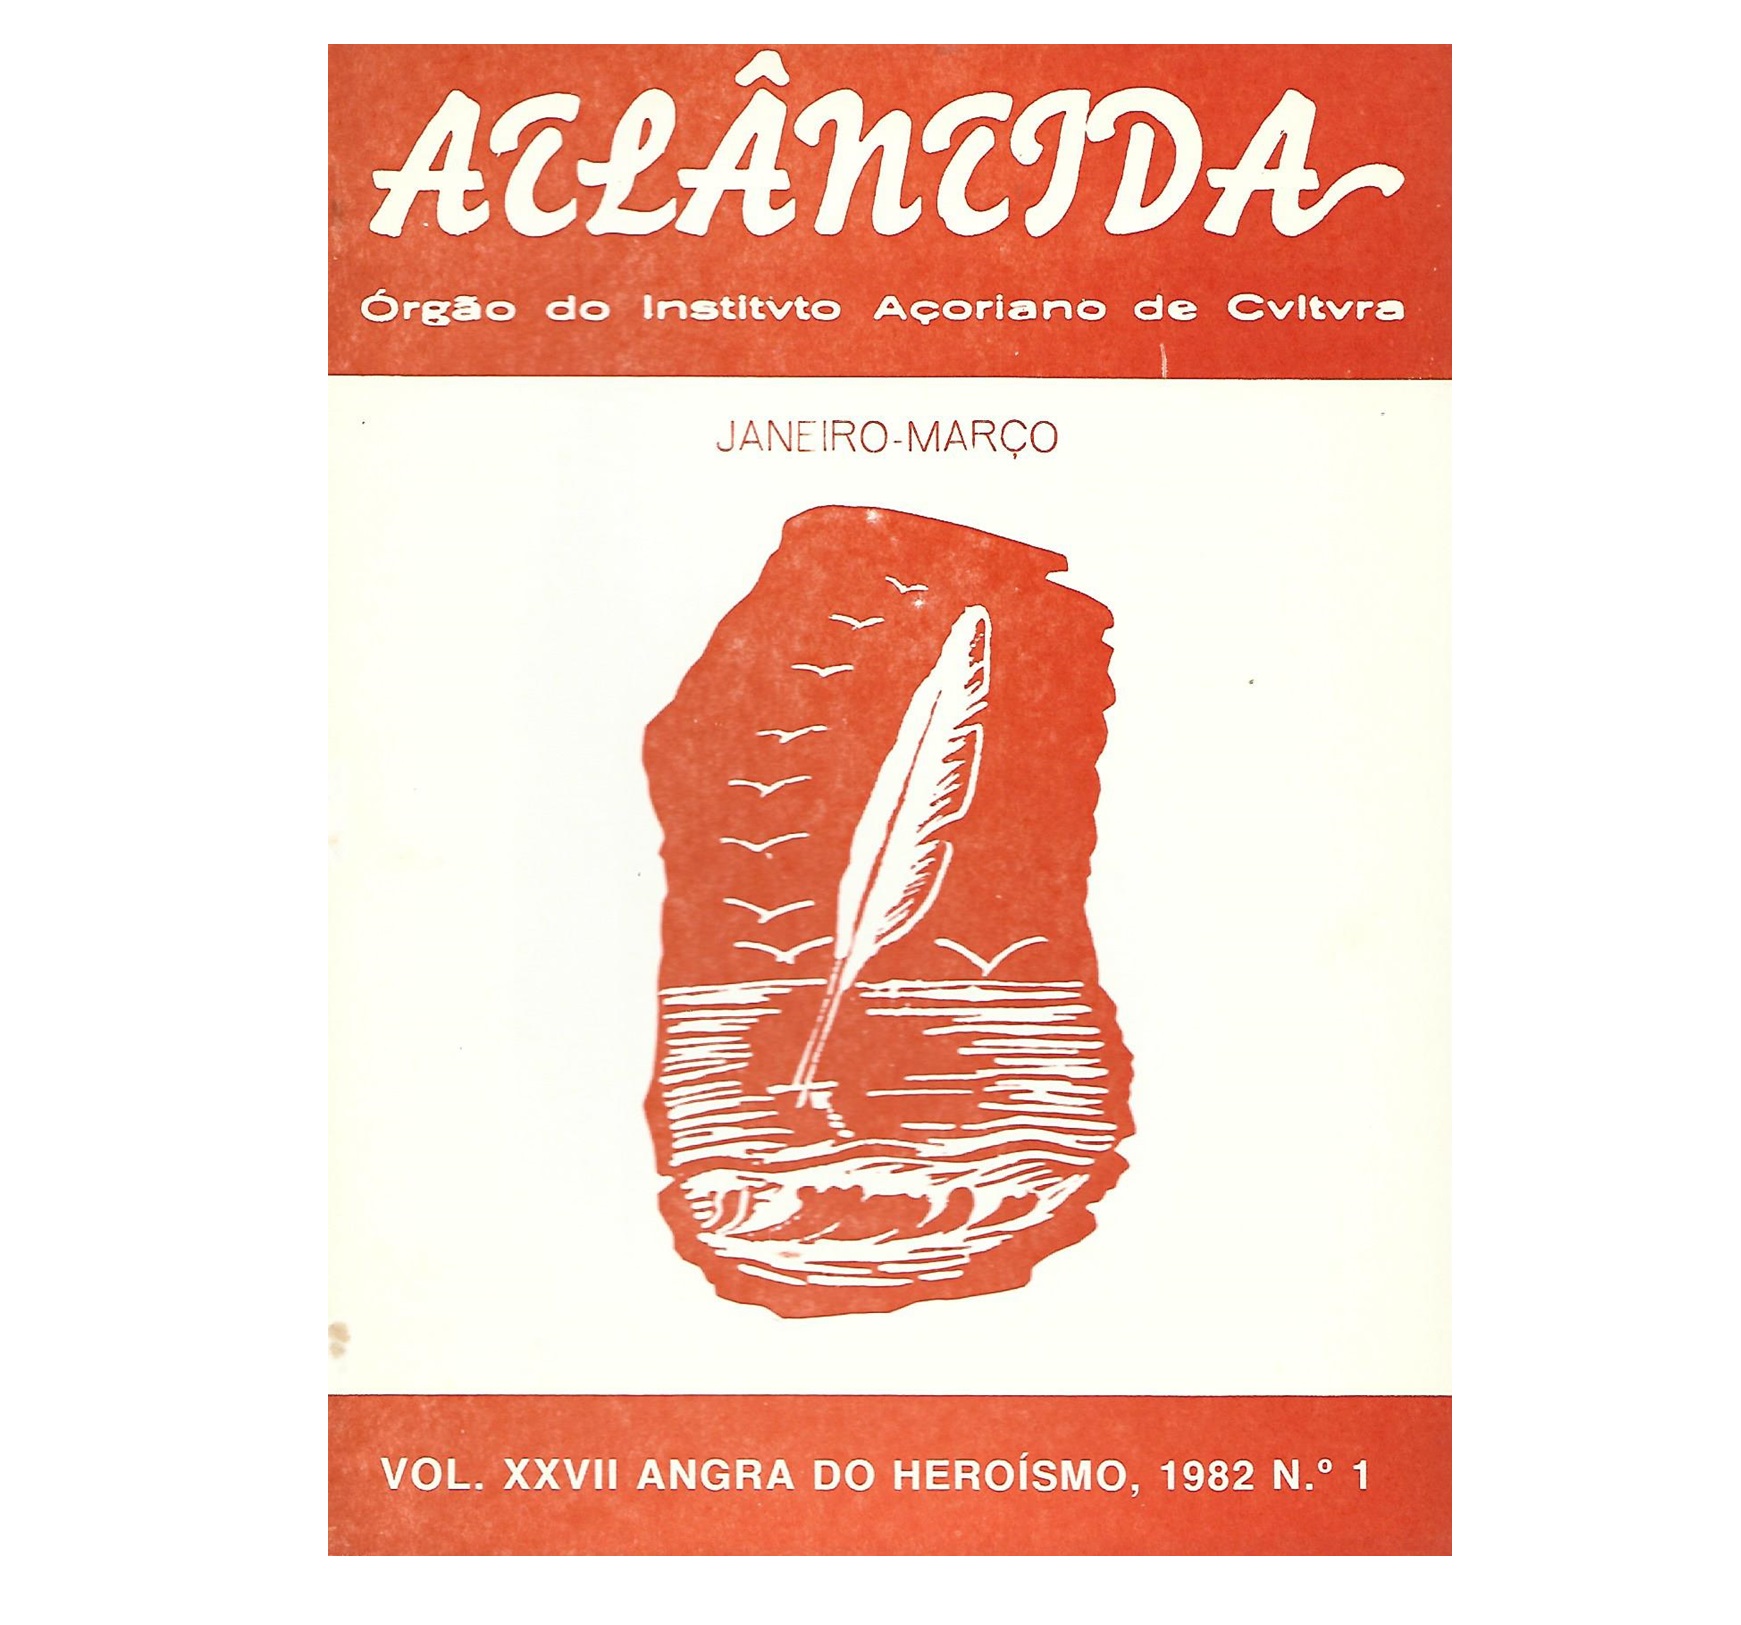 ATLÂNTIDA:.JANEIRO-MARÇO. VOL. XXVII Nº 1, 1982